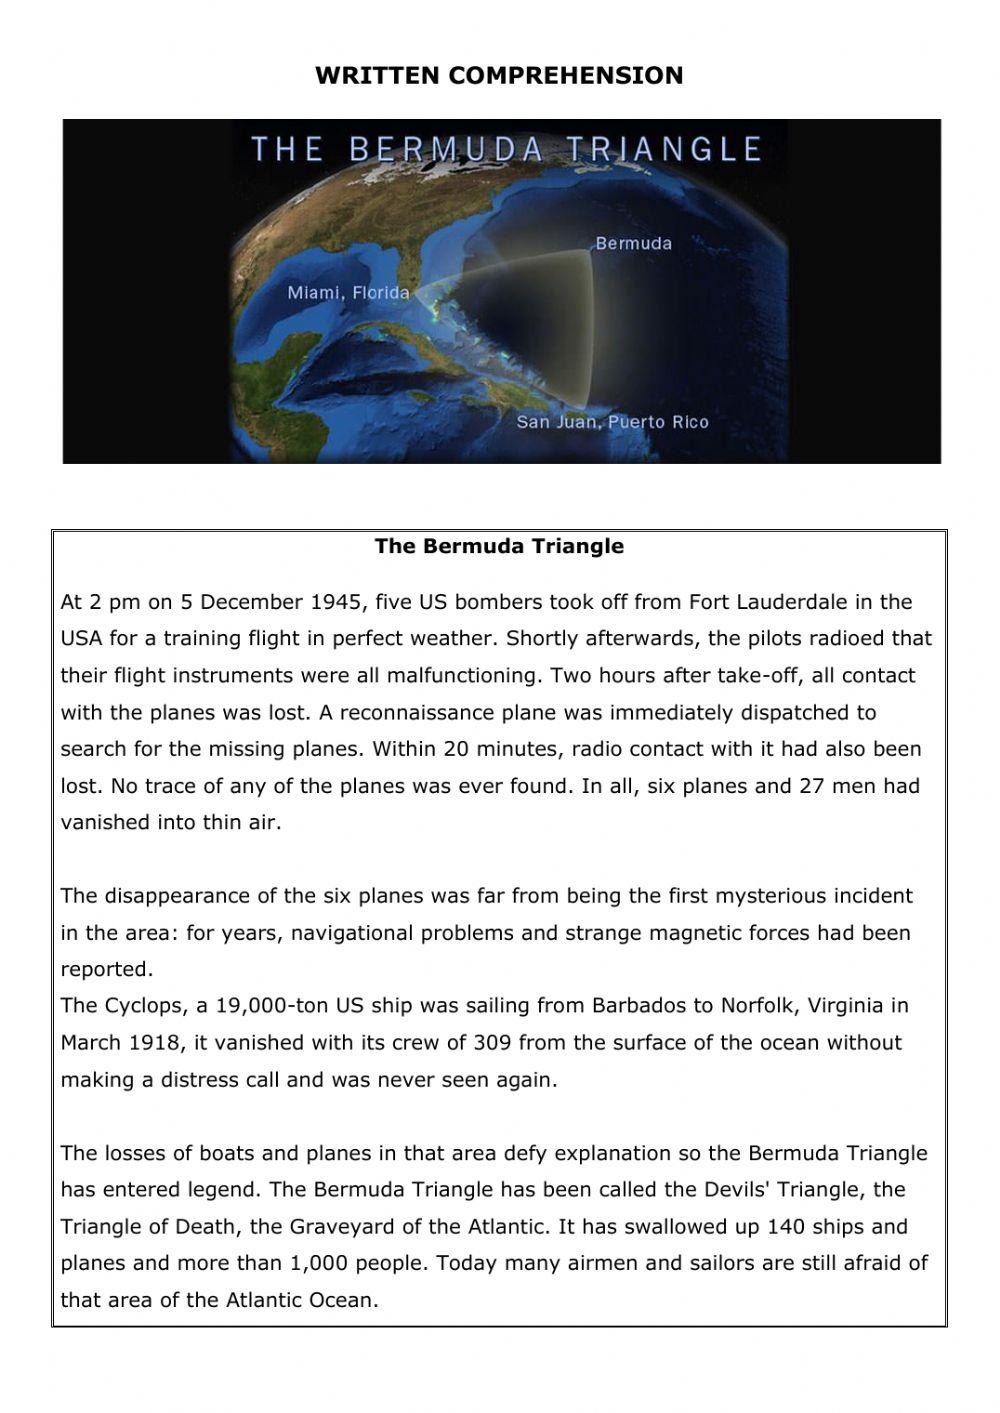 The Bermuda Triangle